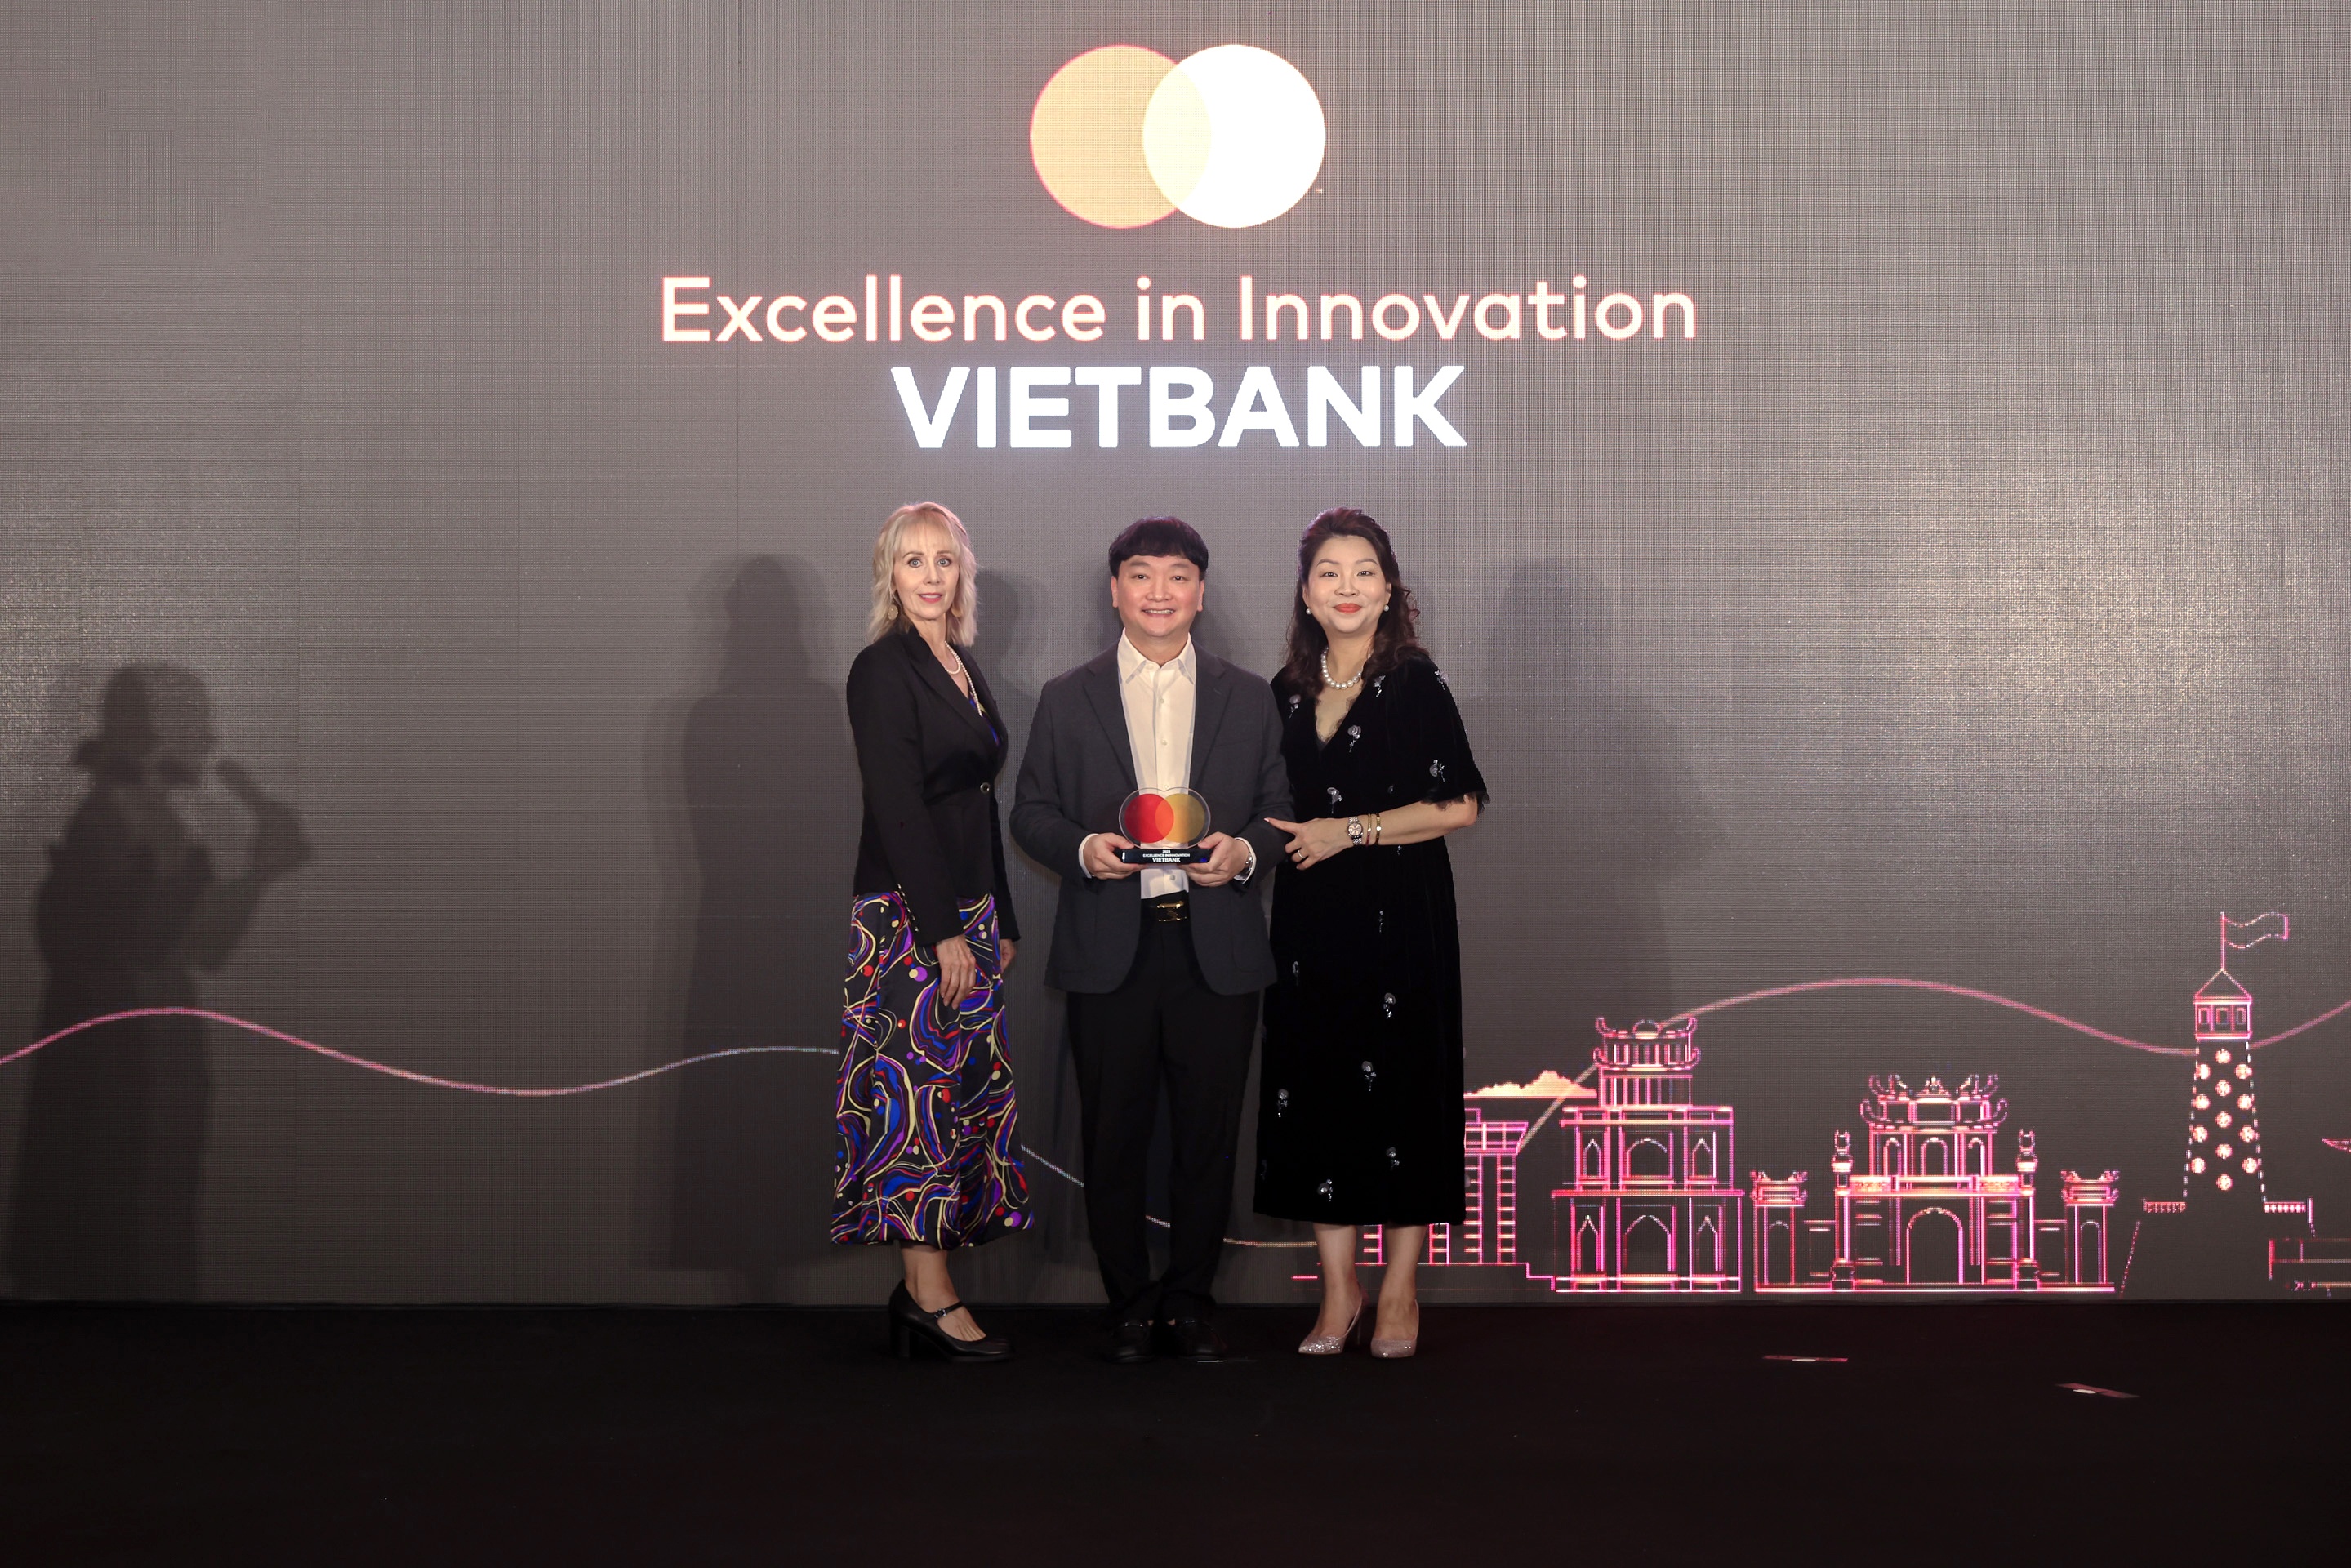 Ông Nguyễn Tiến Sỹ - Phó Tổng Giám đốc, đại diện Vietbank nhận giải thưởng “Excellence in Innovation” do Mastercard trao tặng.